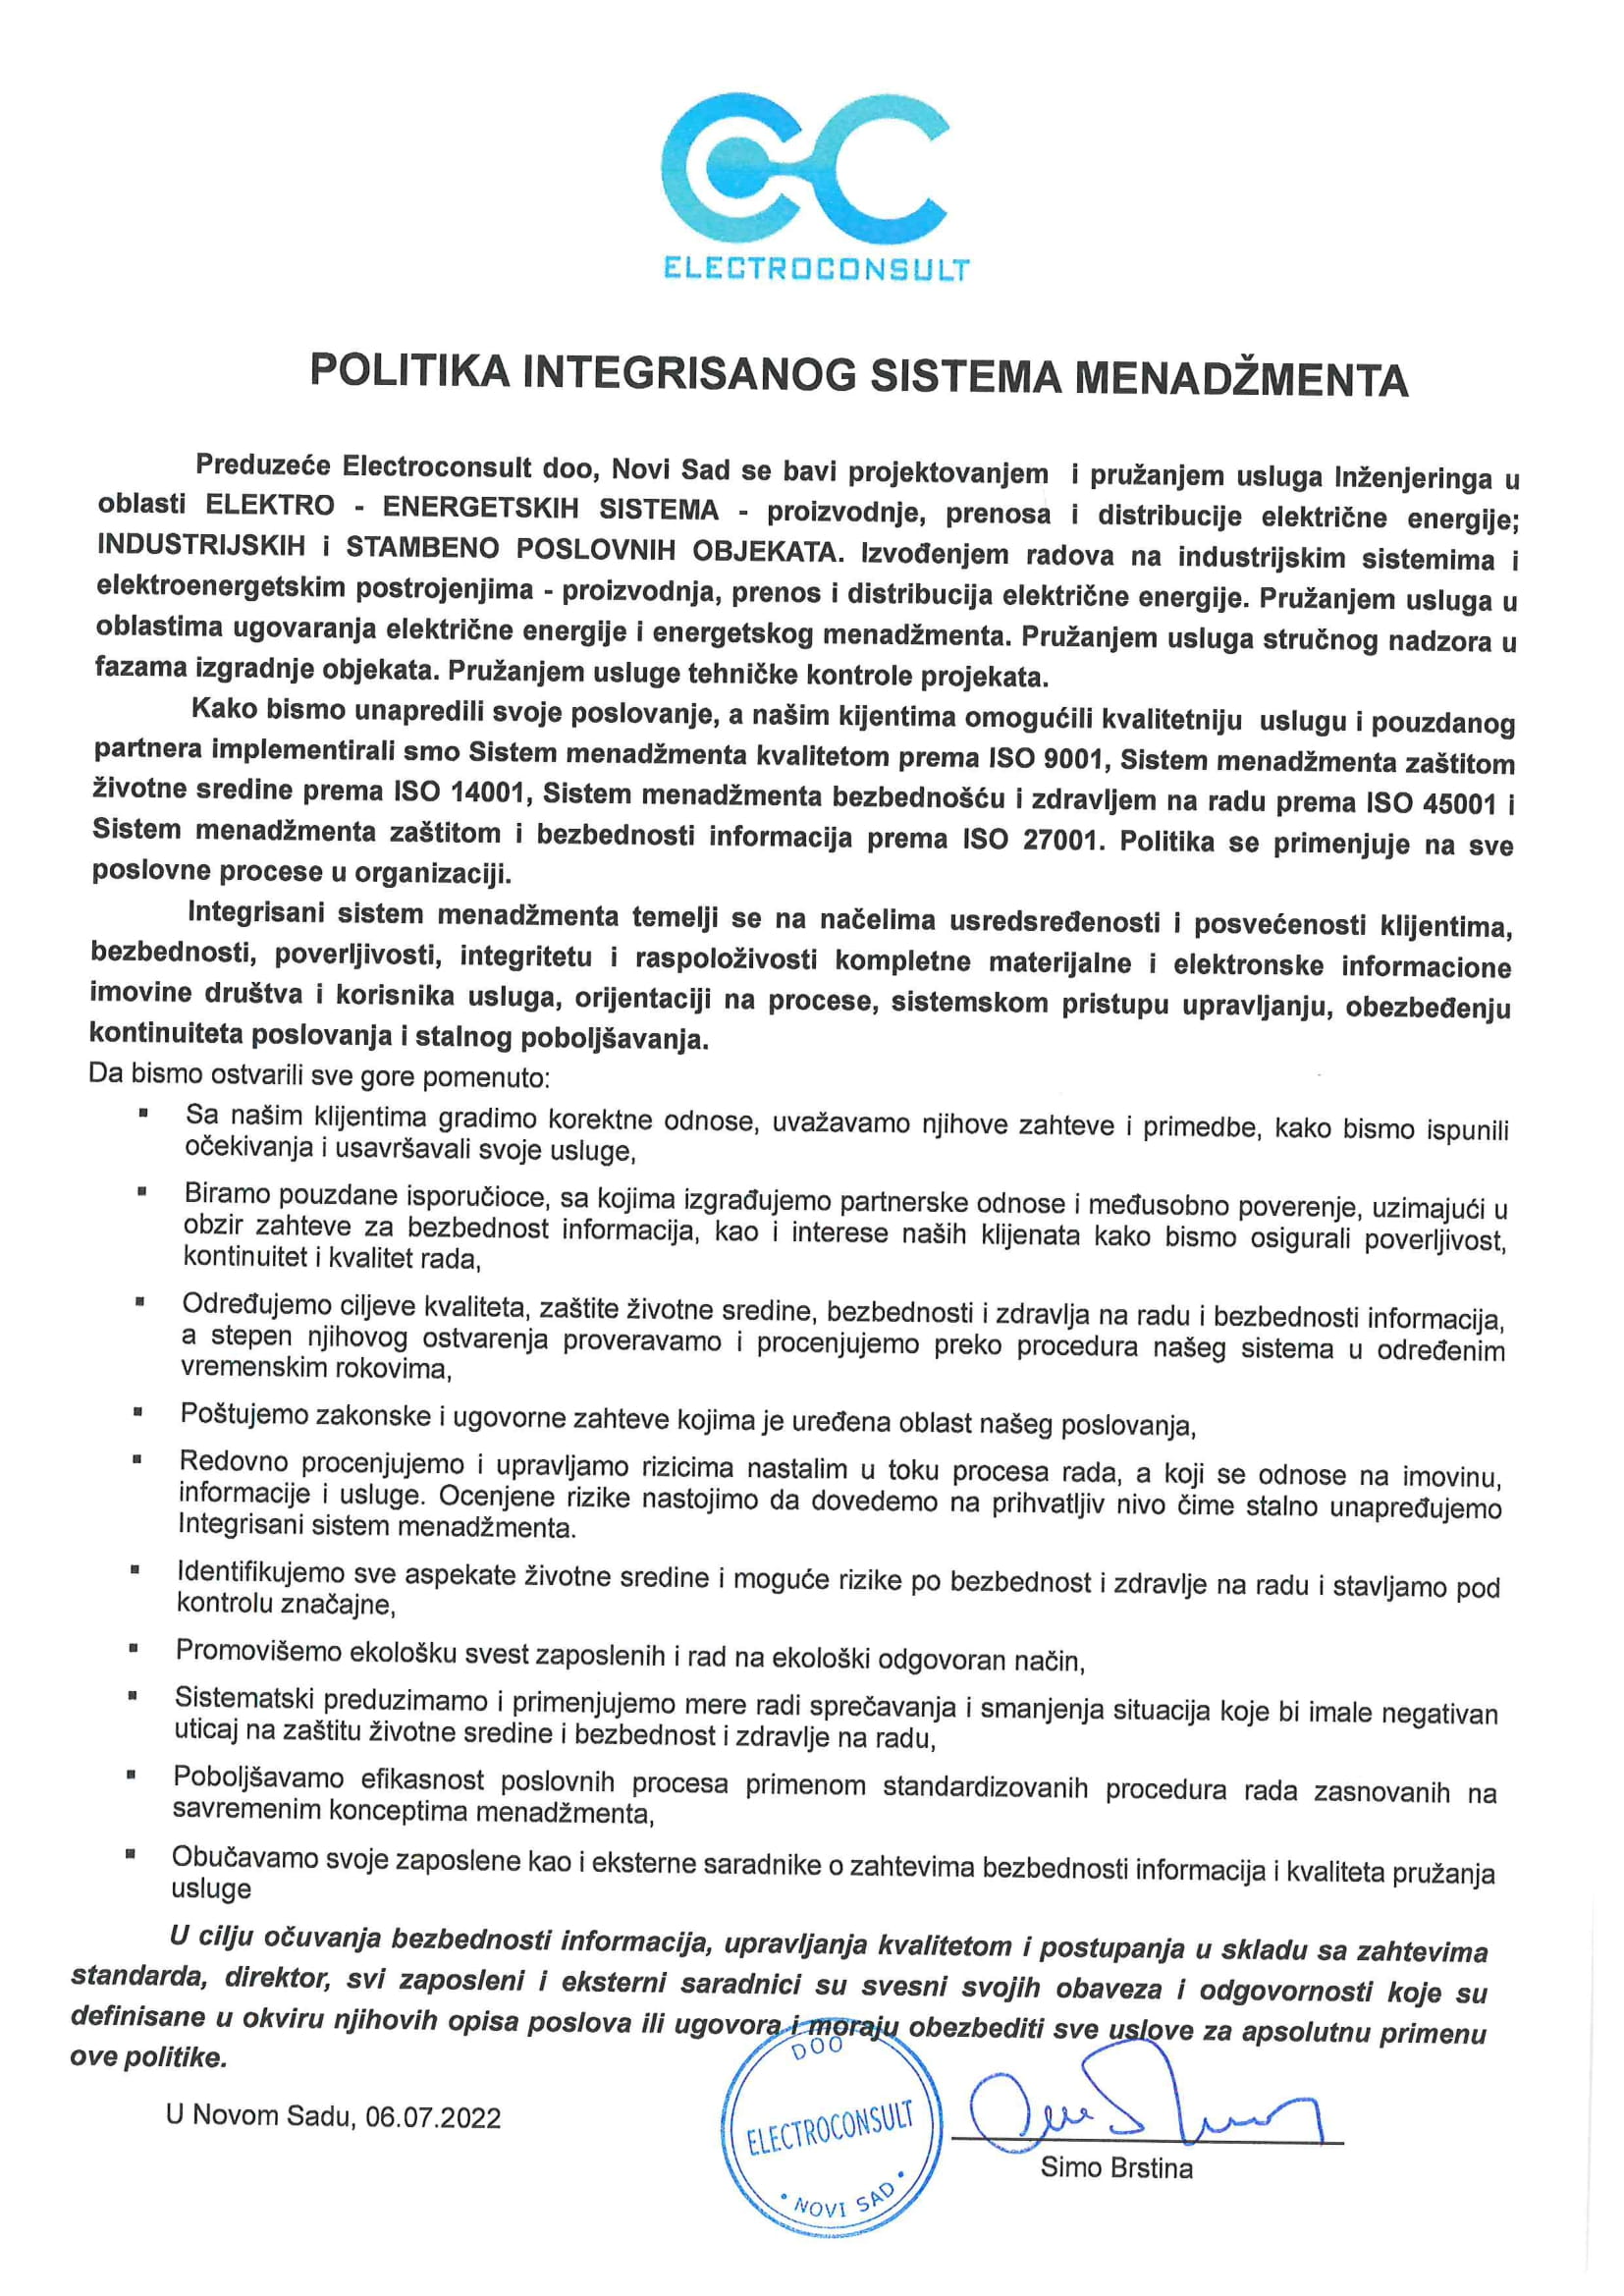 POLITIKA IMS 06 07 2022-1